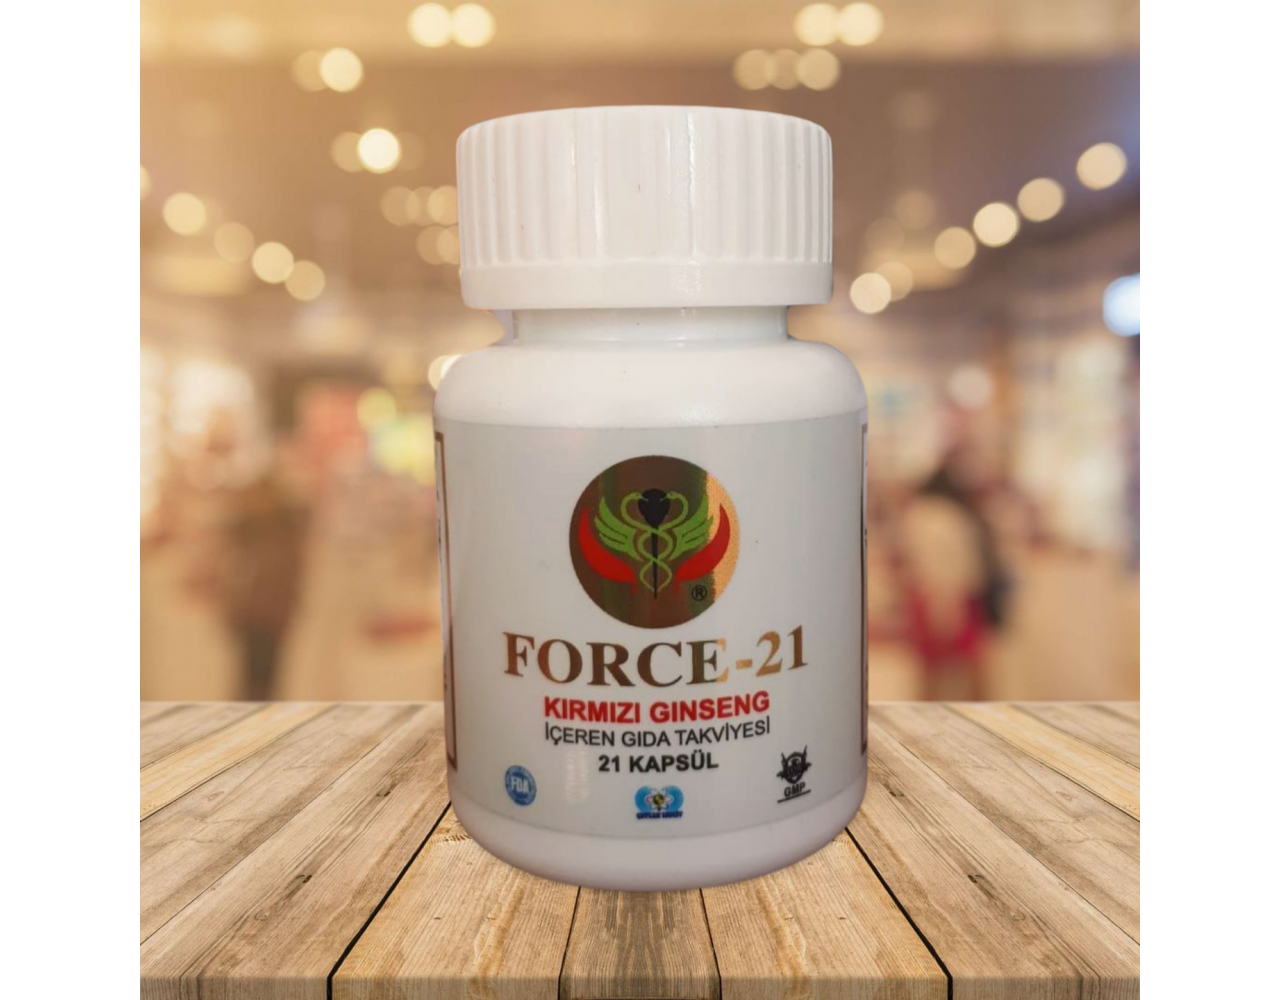 Force-21 Kırmızı Ginseng İçeren Takviye Edici Gıda (21 Kapsül)